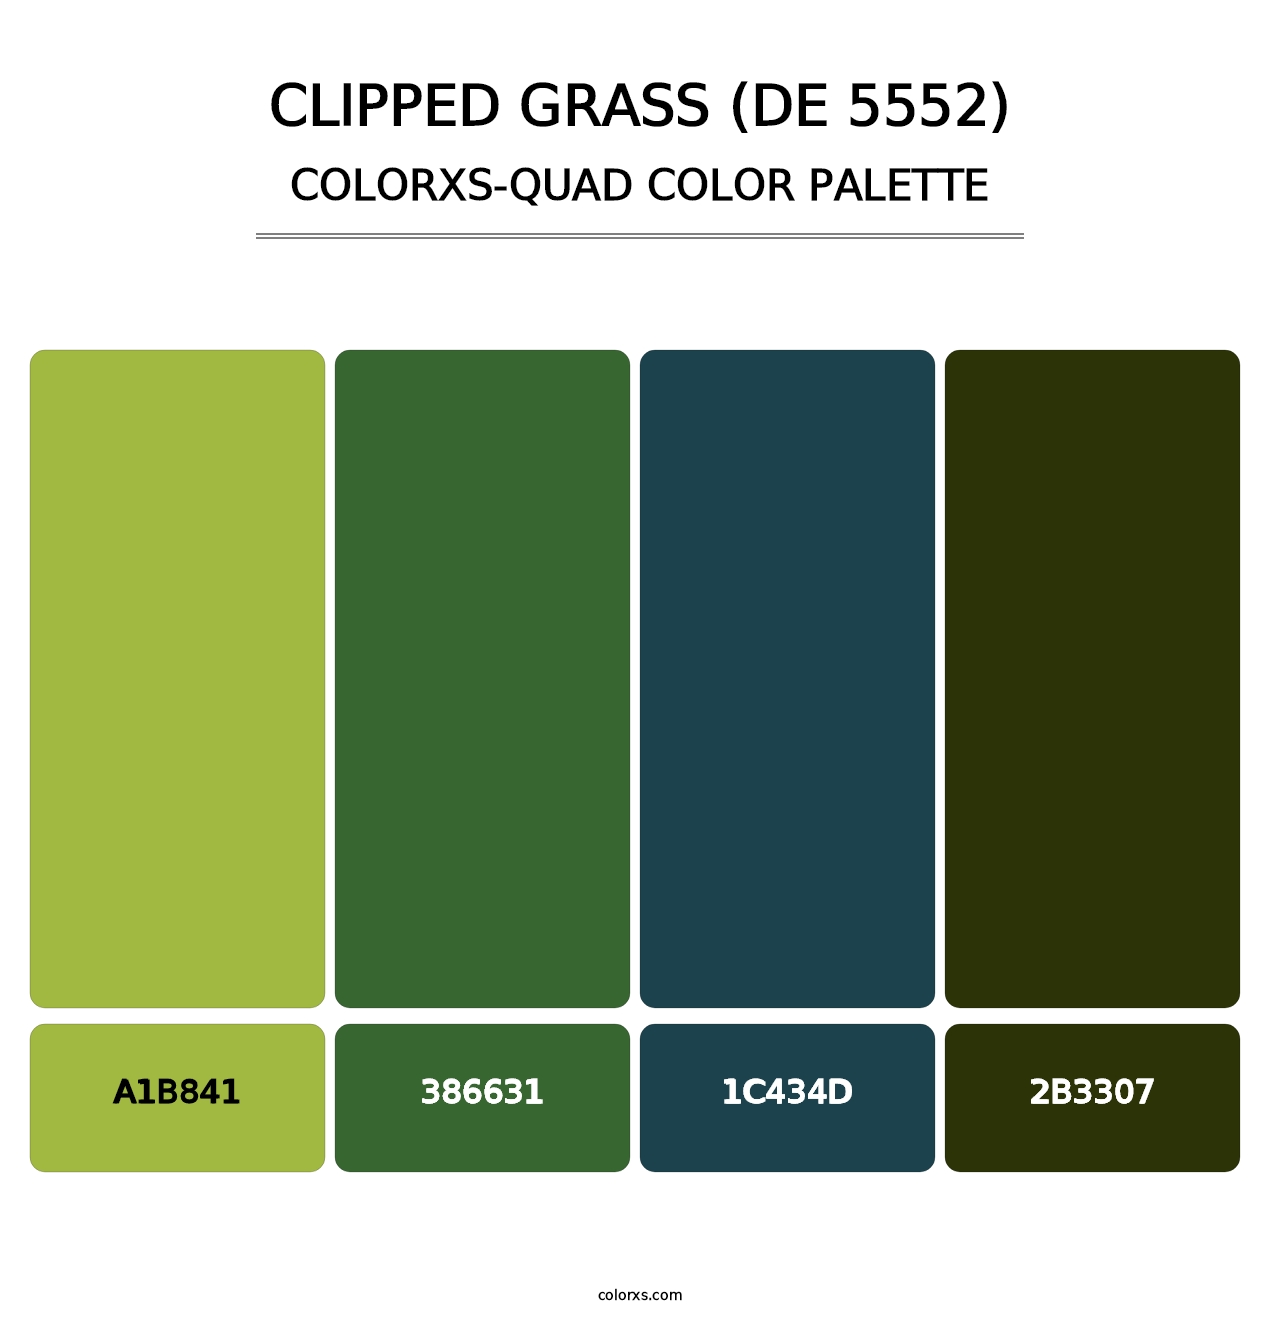 Clipped Grass (DE 5552) - Colorxs Quad Palette